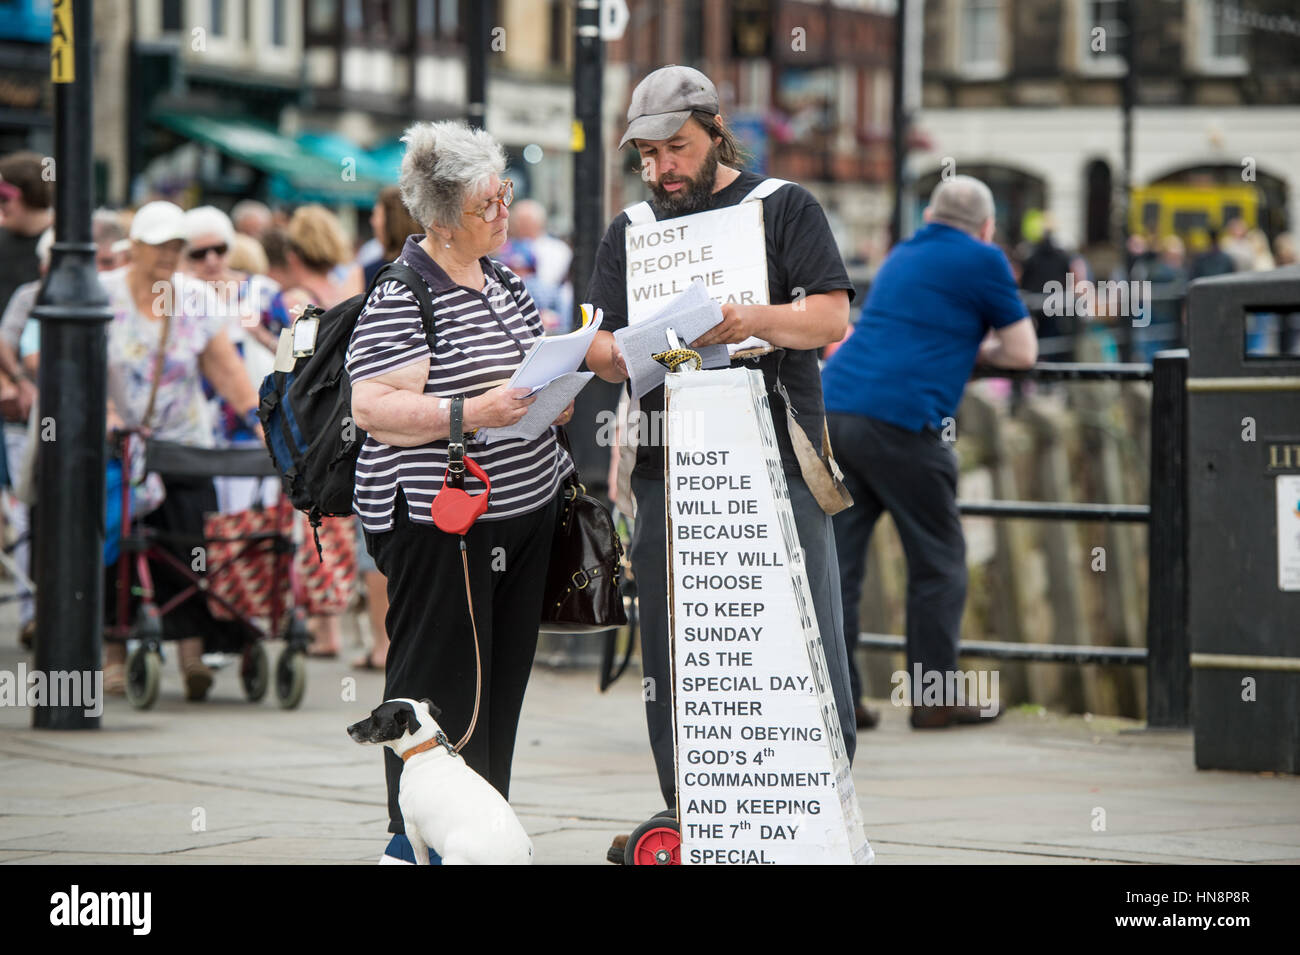 Regno Unito, Inghilterra, Yorkshire - due persone la lettura e la conversazione sulle credenze religiose in downtown Whitby, Inghilterra. Foto Stock